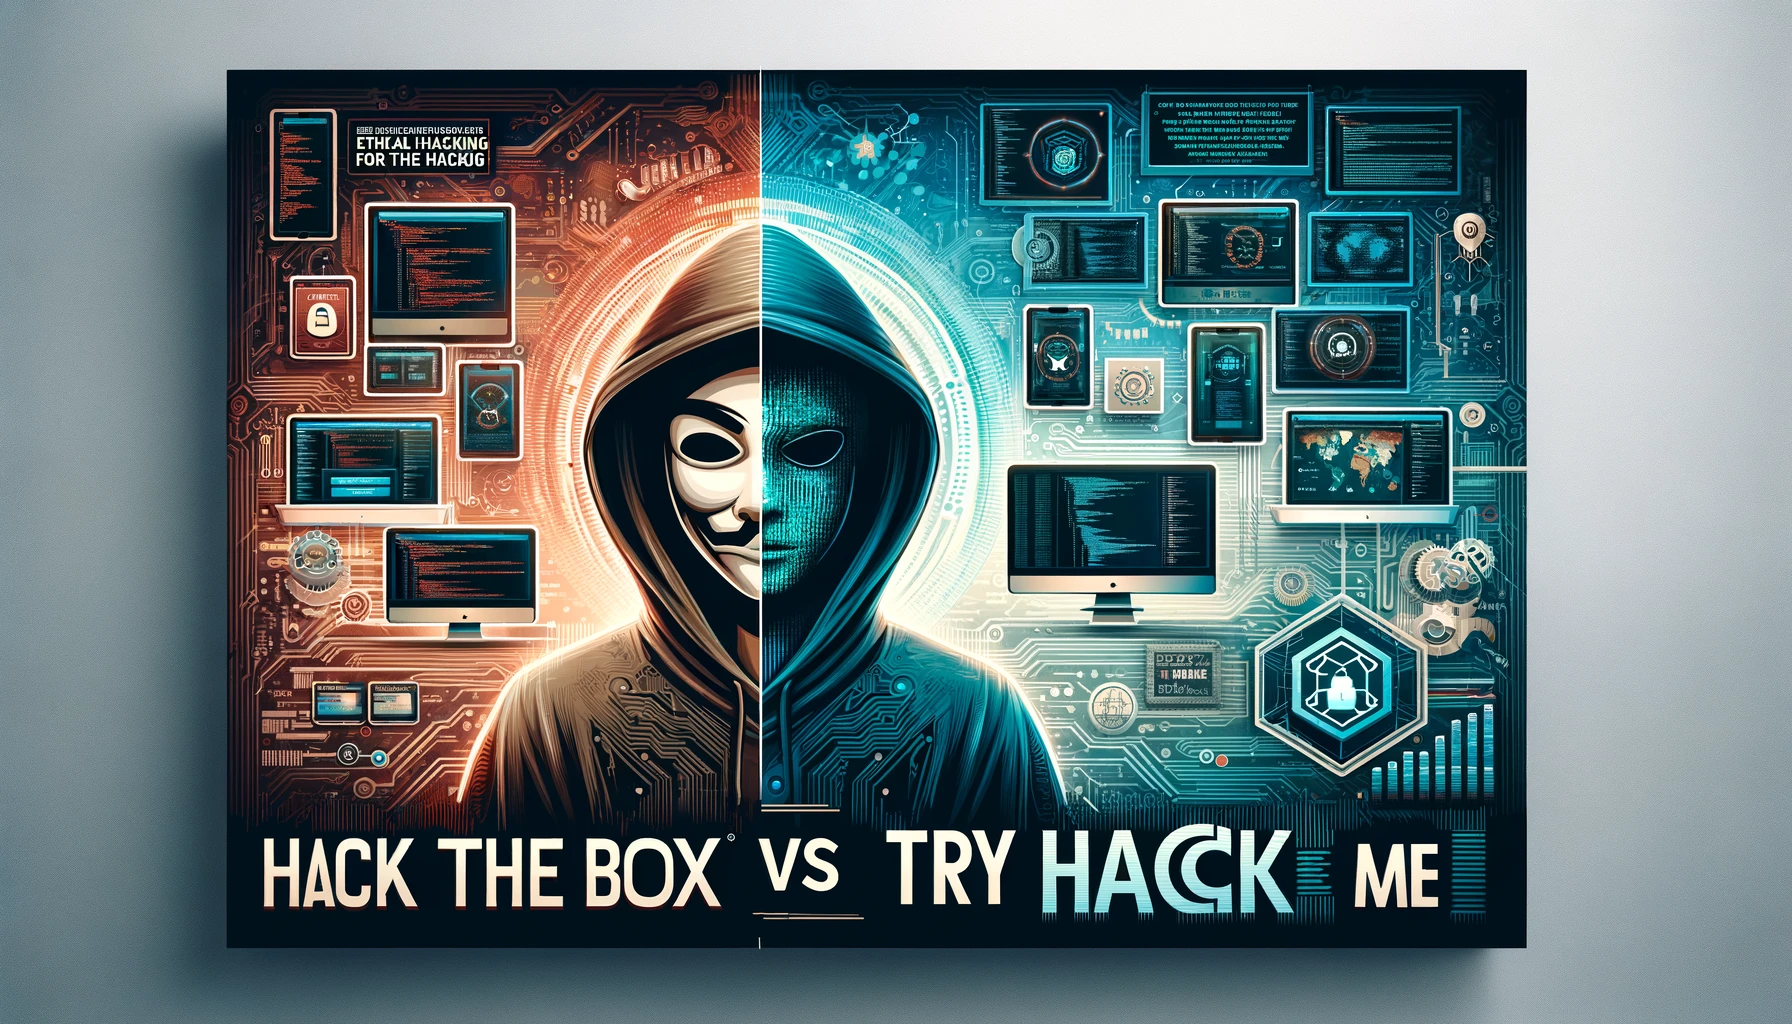 Banner comparativo entre Hack the Box y Try Hack Me, mostrando logos y entornos de ciberseguridad distintivos de cada plataforma, separados por un 'VS' central.